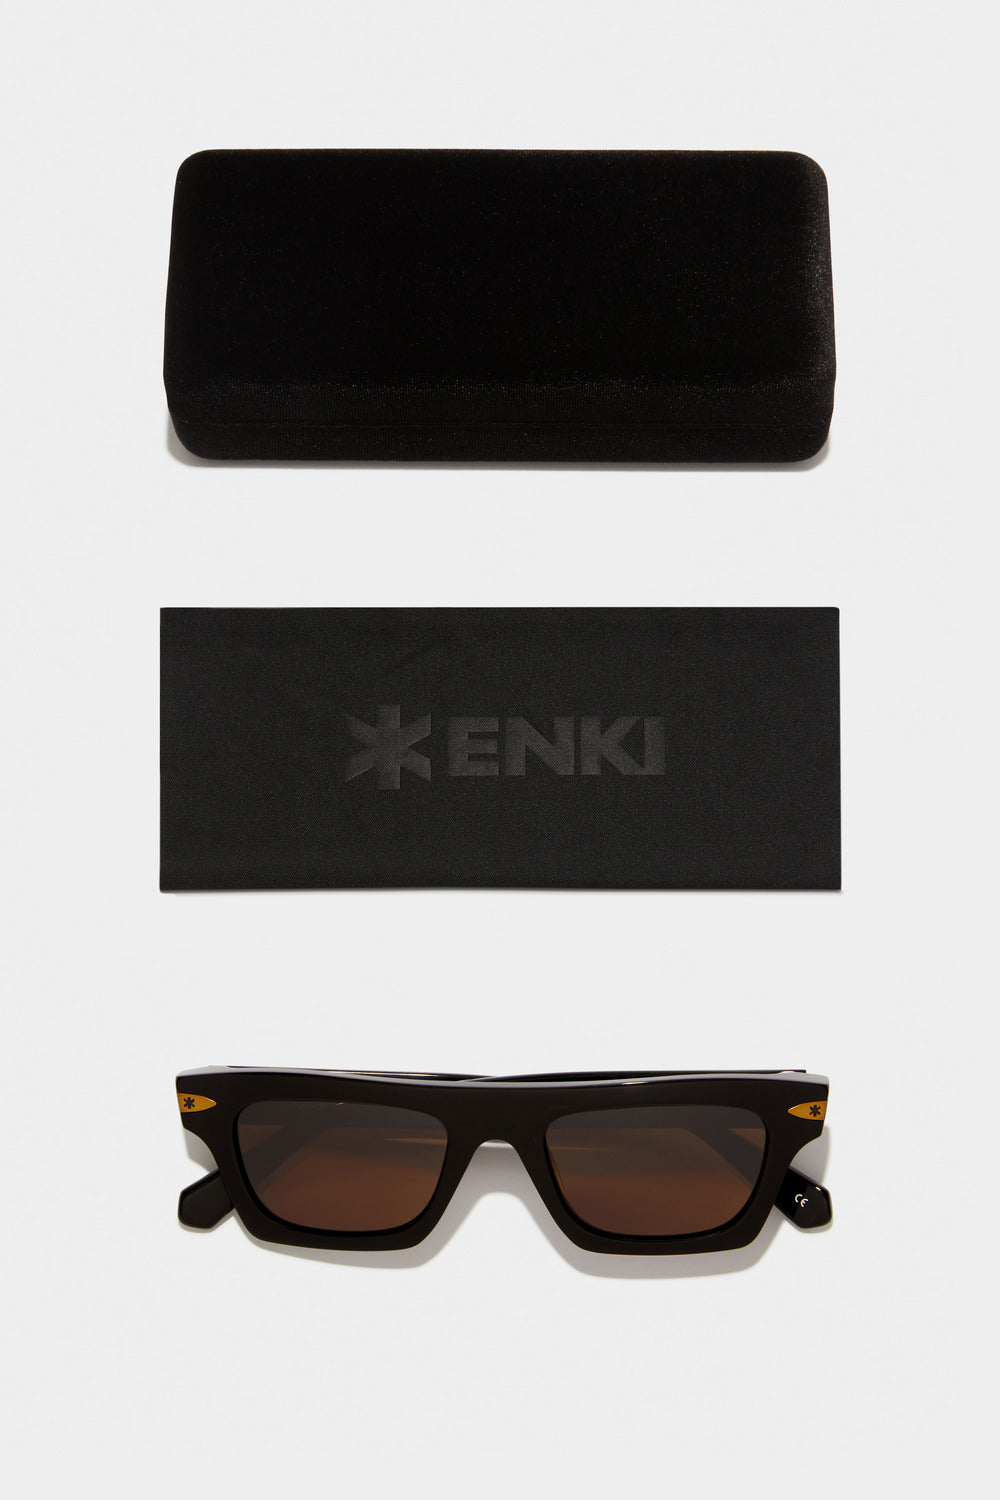 www.enkieyewear.com Hermias Men’s and Women’s Sunglasses